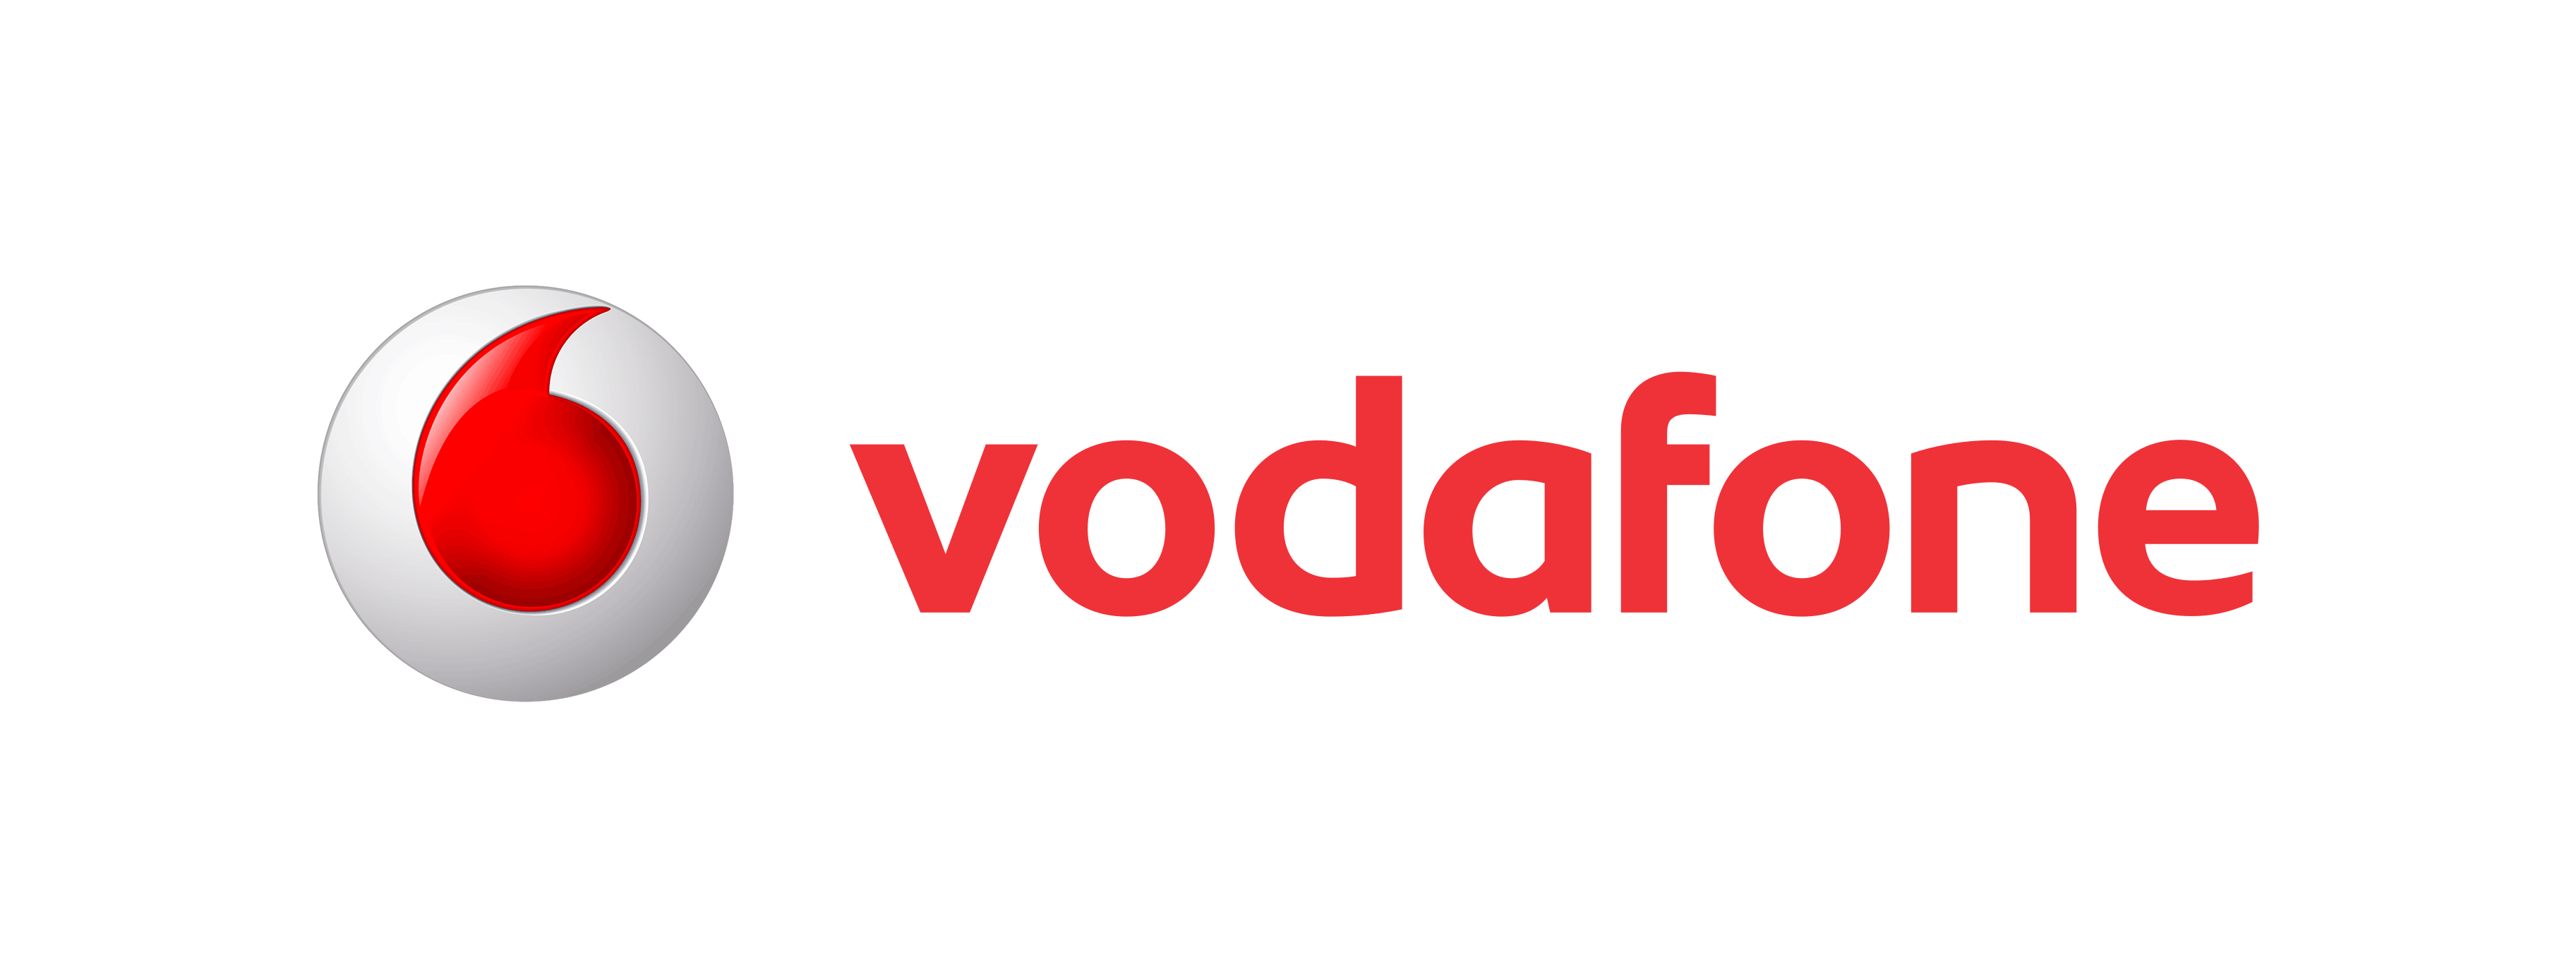 Vodafone Logo Png Download - 